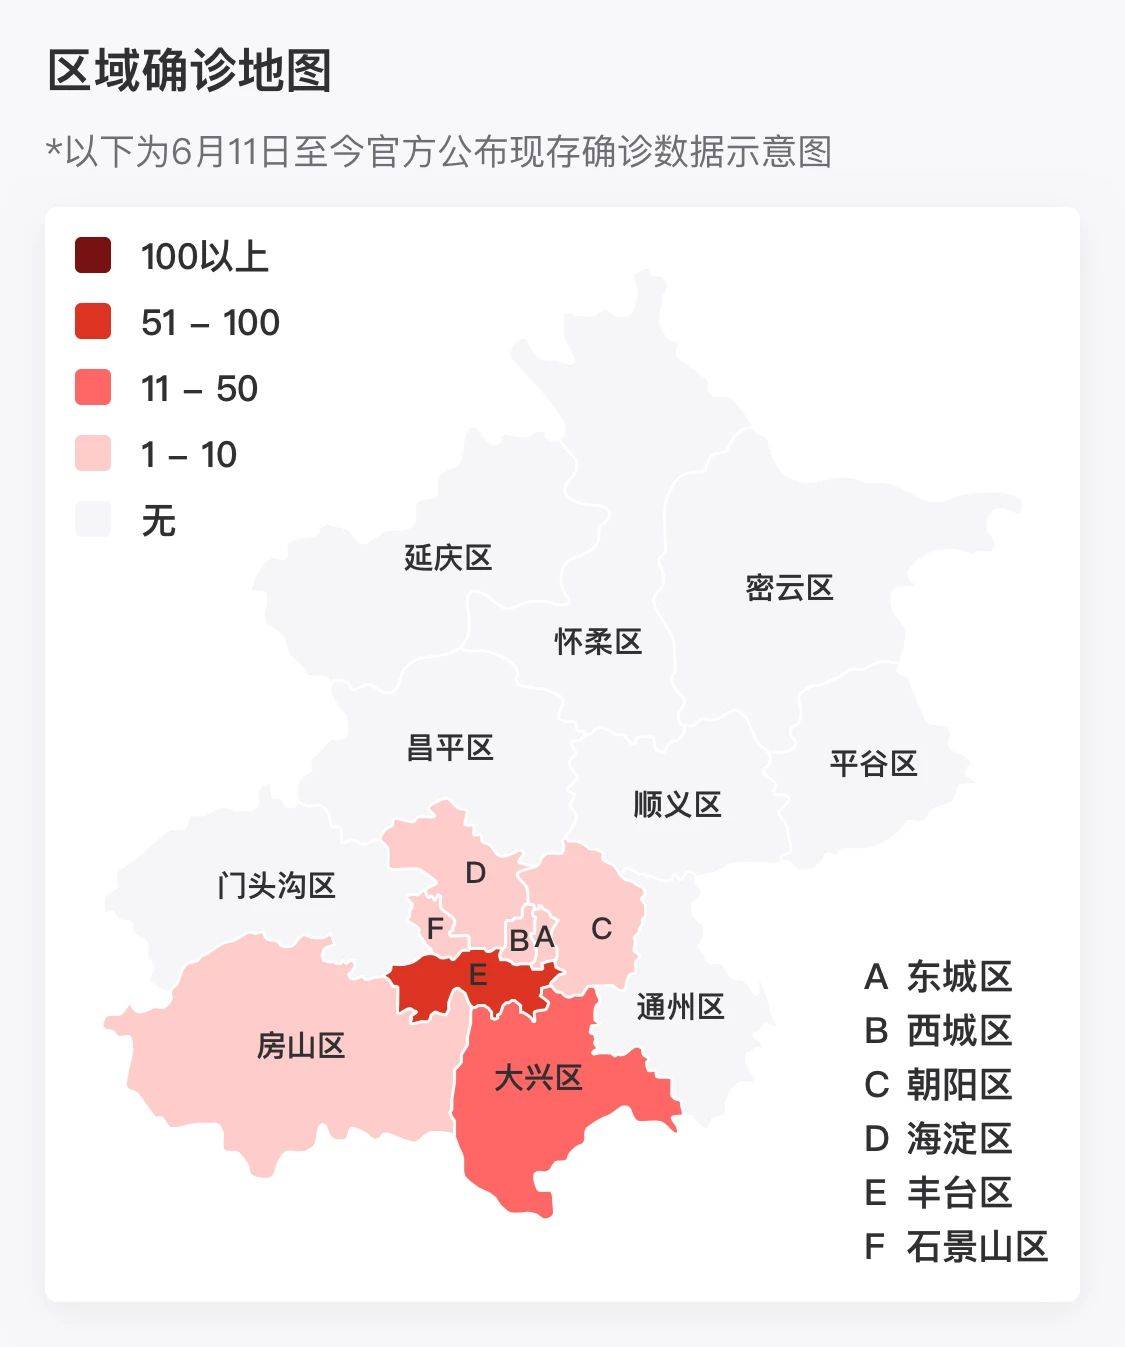 涉及8个区36个地点!北京最新版疫情地图请查收